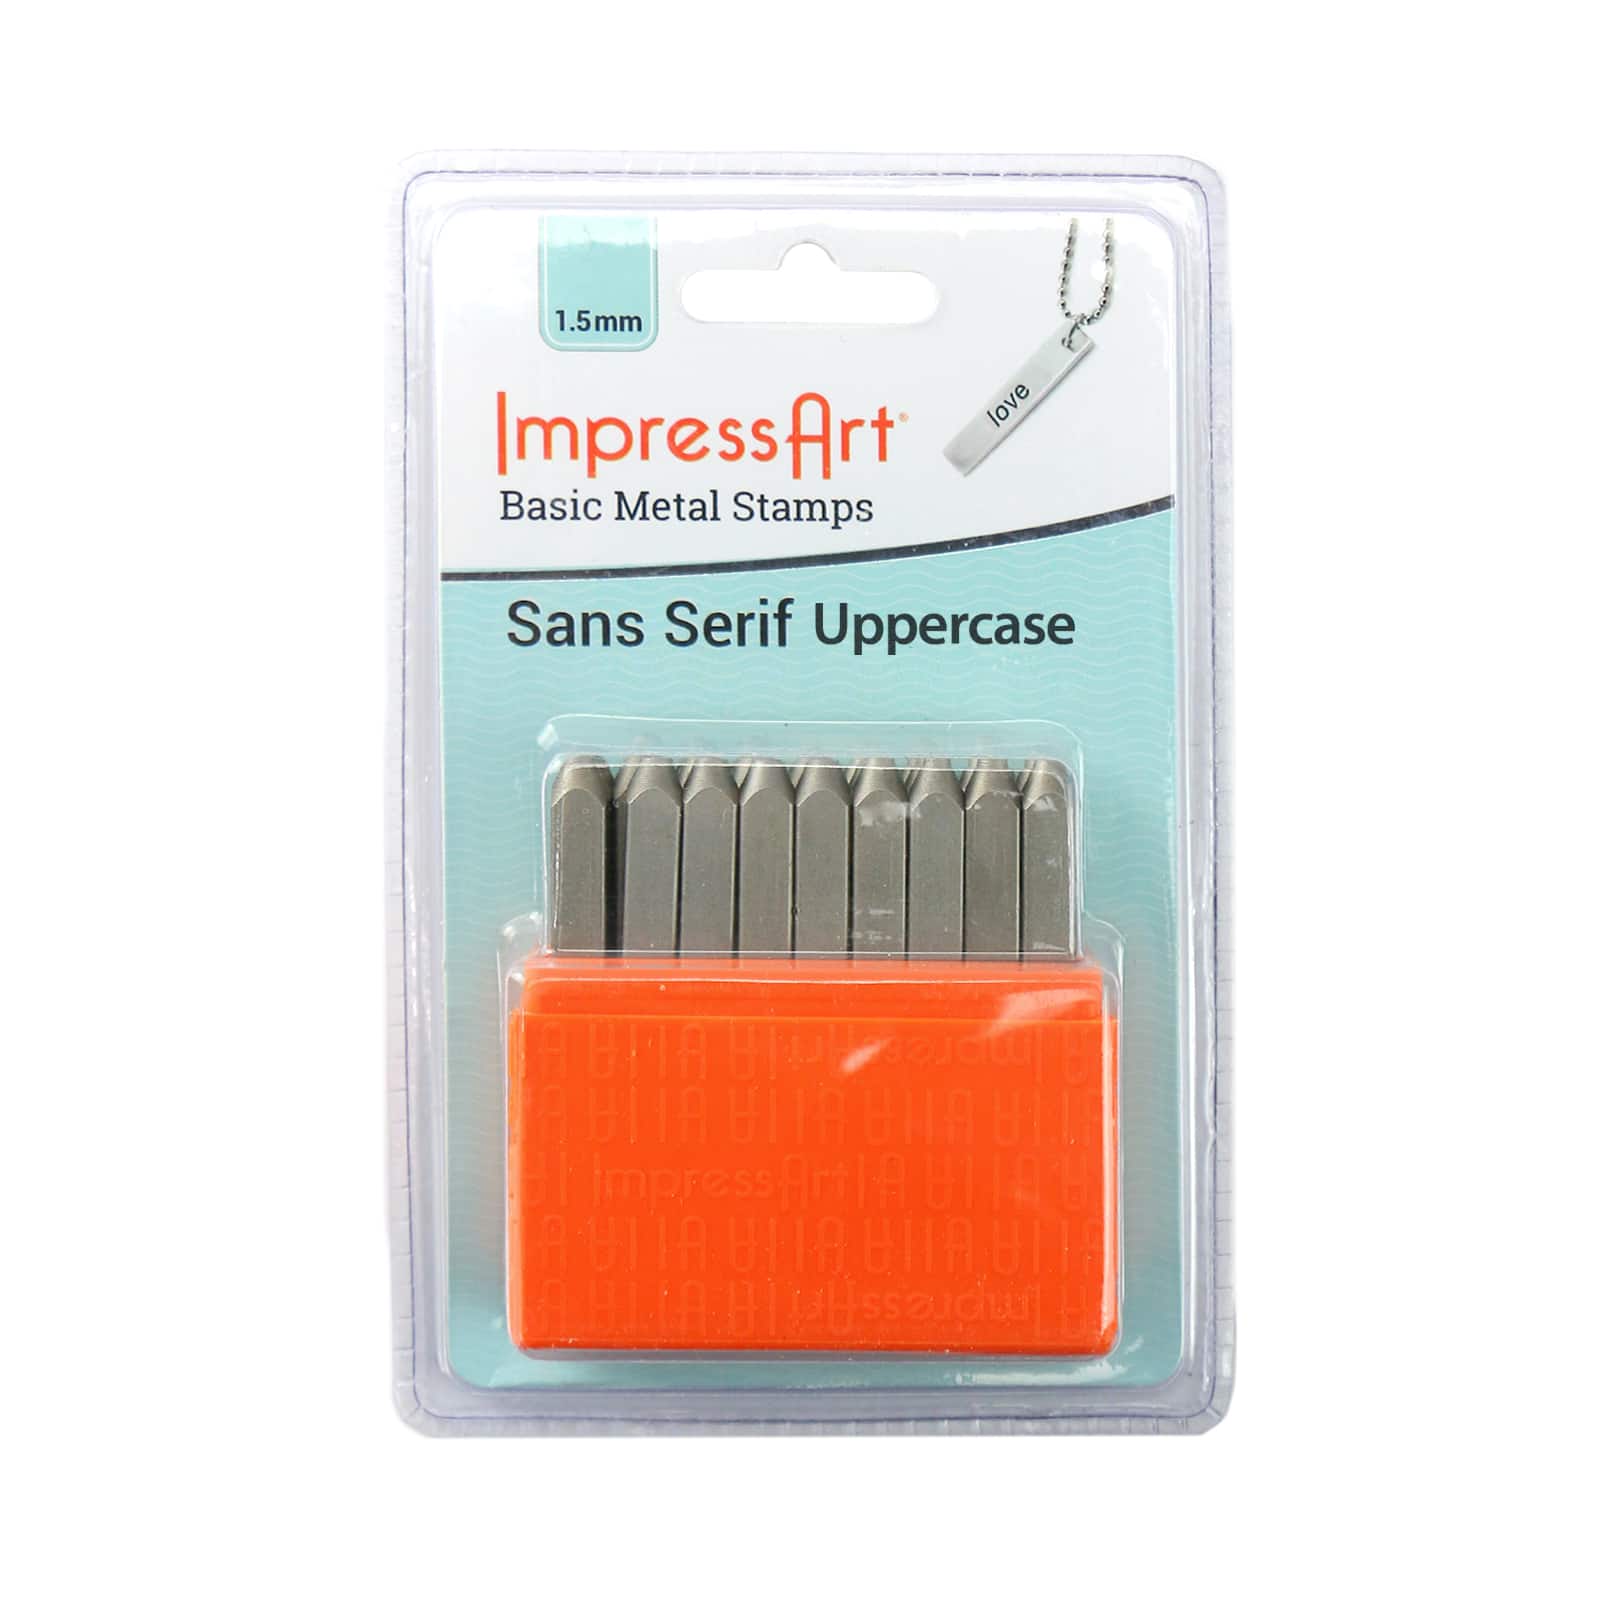 ImpressArt Basic Metal Stamp Set, Uppercase, 1.5mm